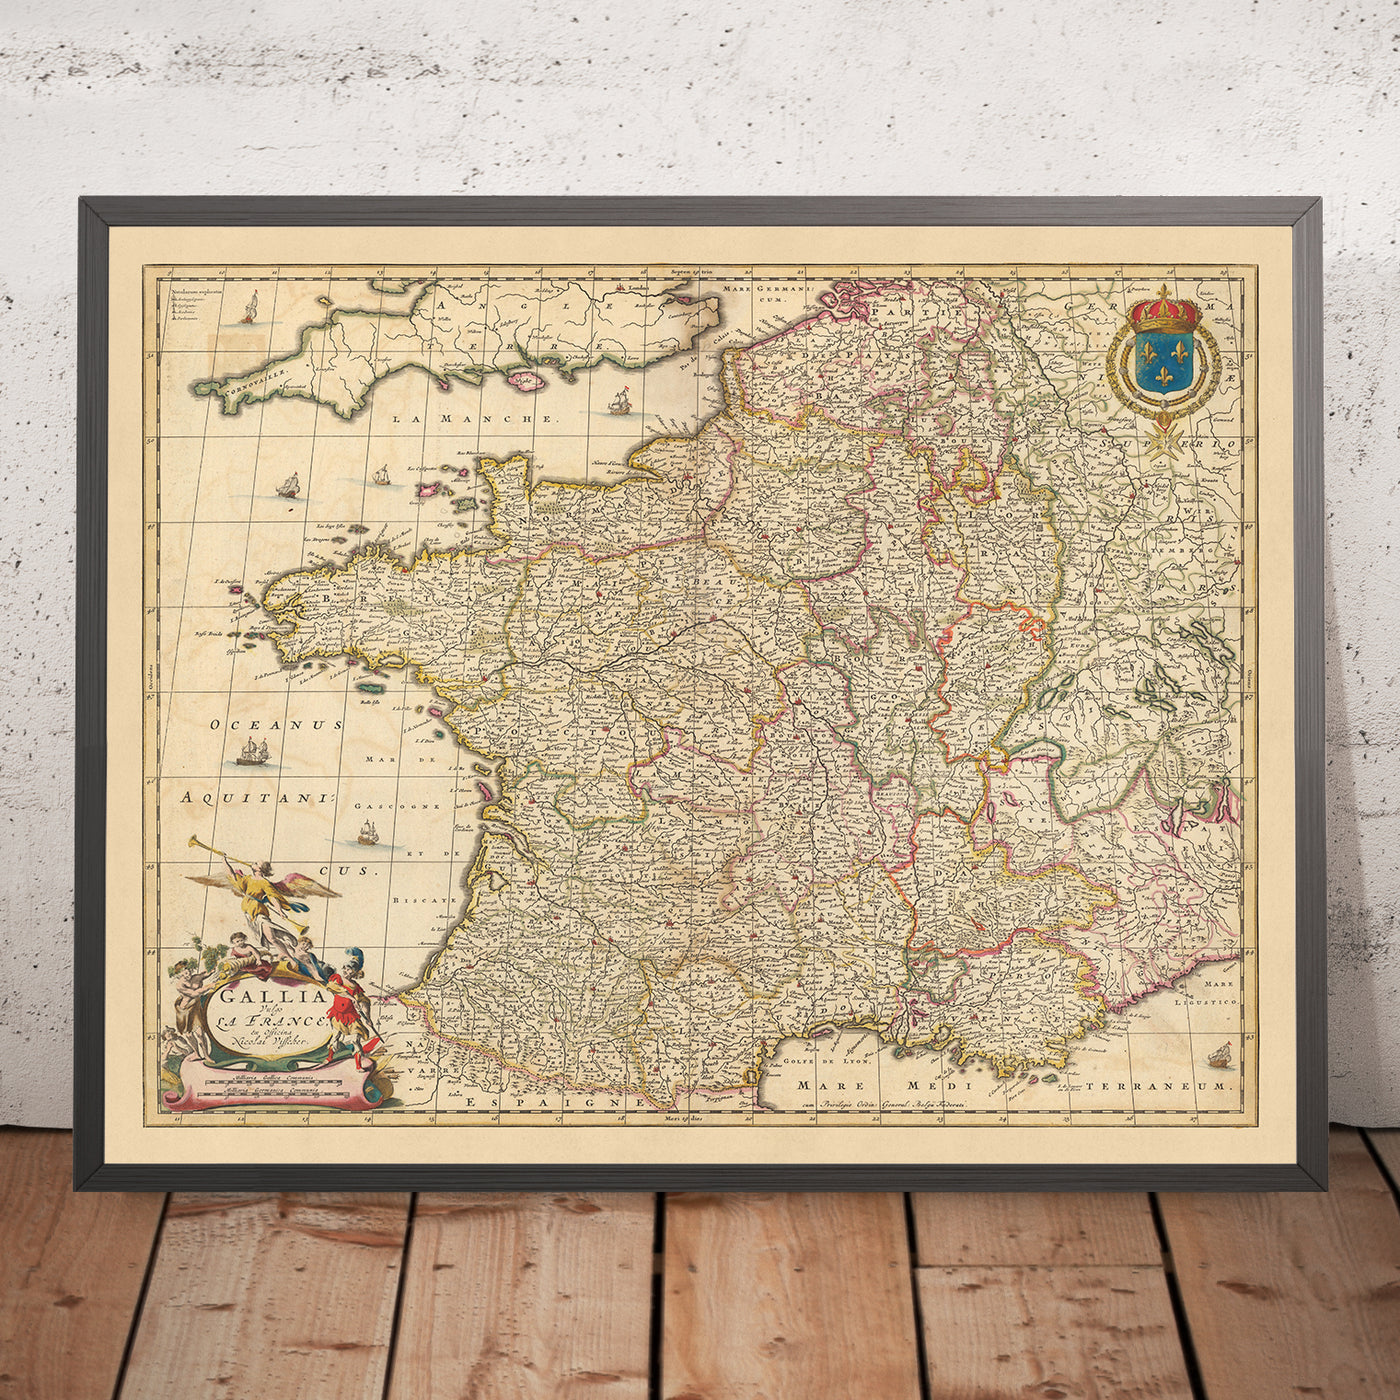 Mapa antiguo de Francia: 'Gallia Vulgo' de Visscher, 1690: París, Bruselas, provincias y regiones de Francia, Riviera Francesa